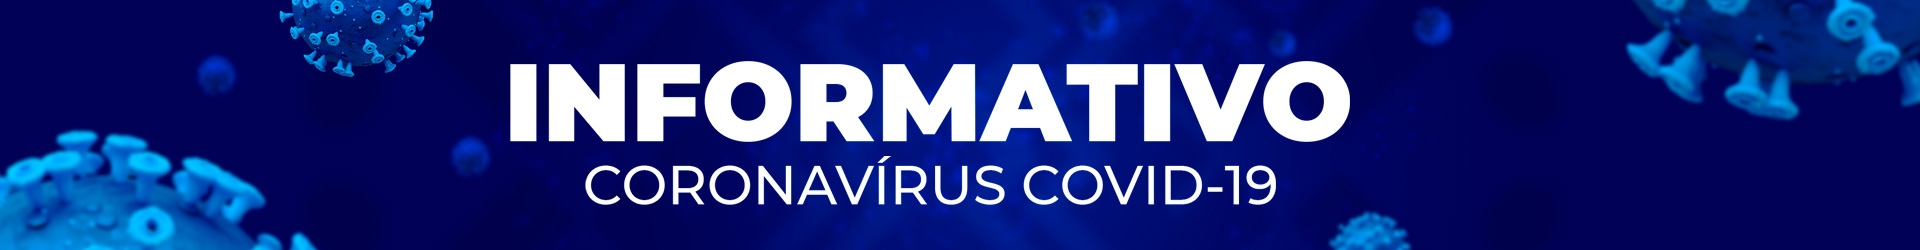 Coronavírus (COVID-19)